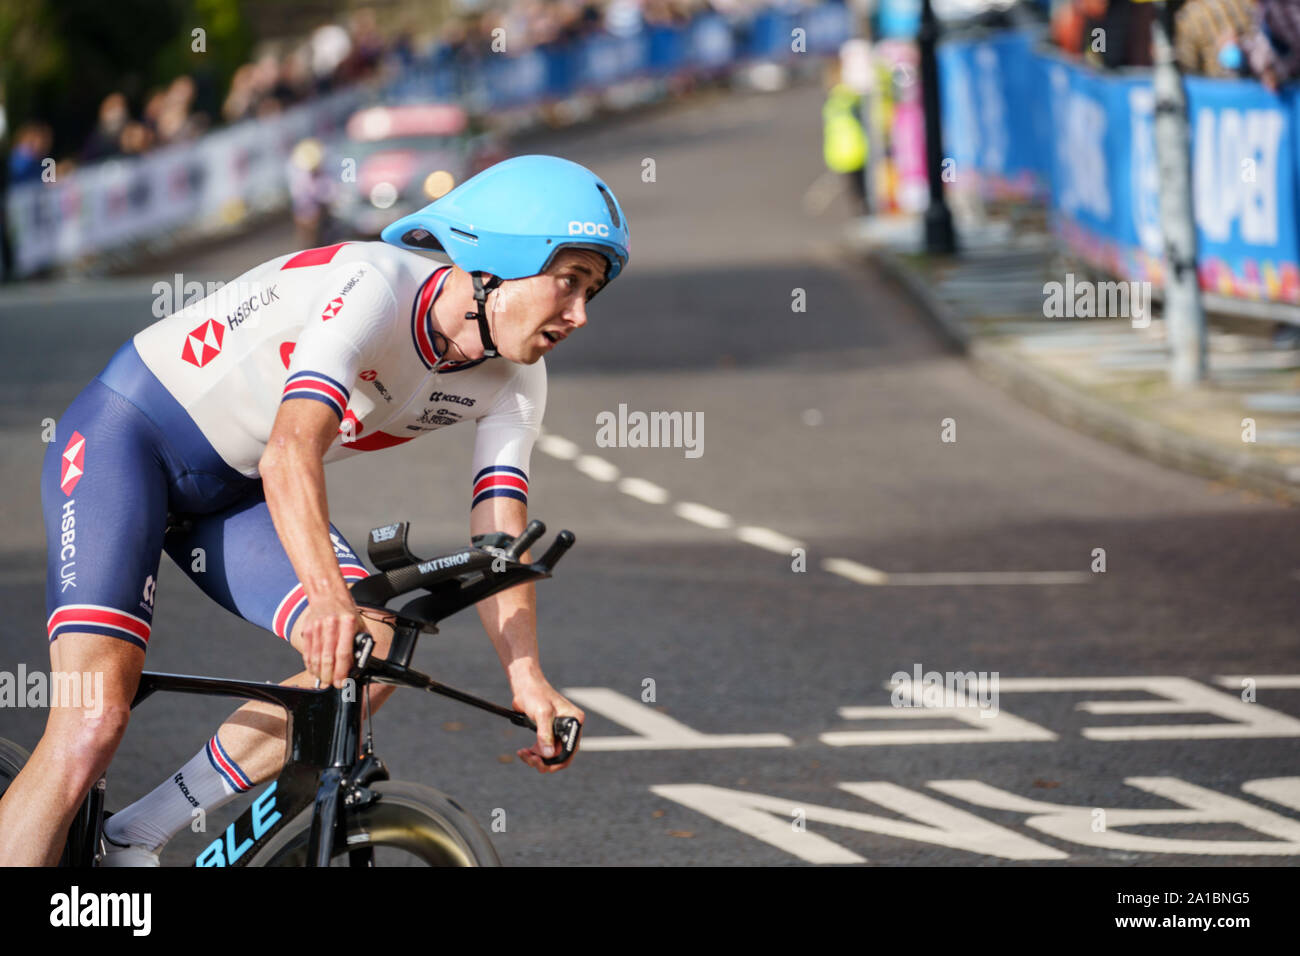 John Archibald cycliste britannique participant aux Championnats du monde de route UCI 2019, épreuve individuelle du temps de l'élite masculine, Harrogate, North Yorkshire, Angleterre. Banque D'Images